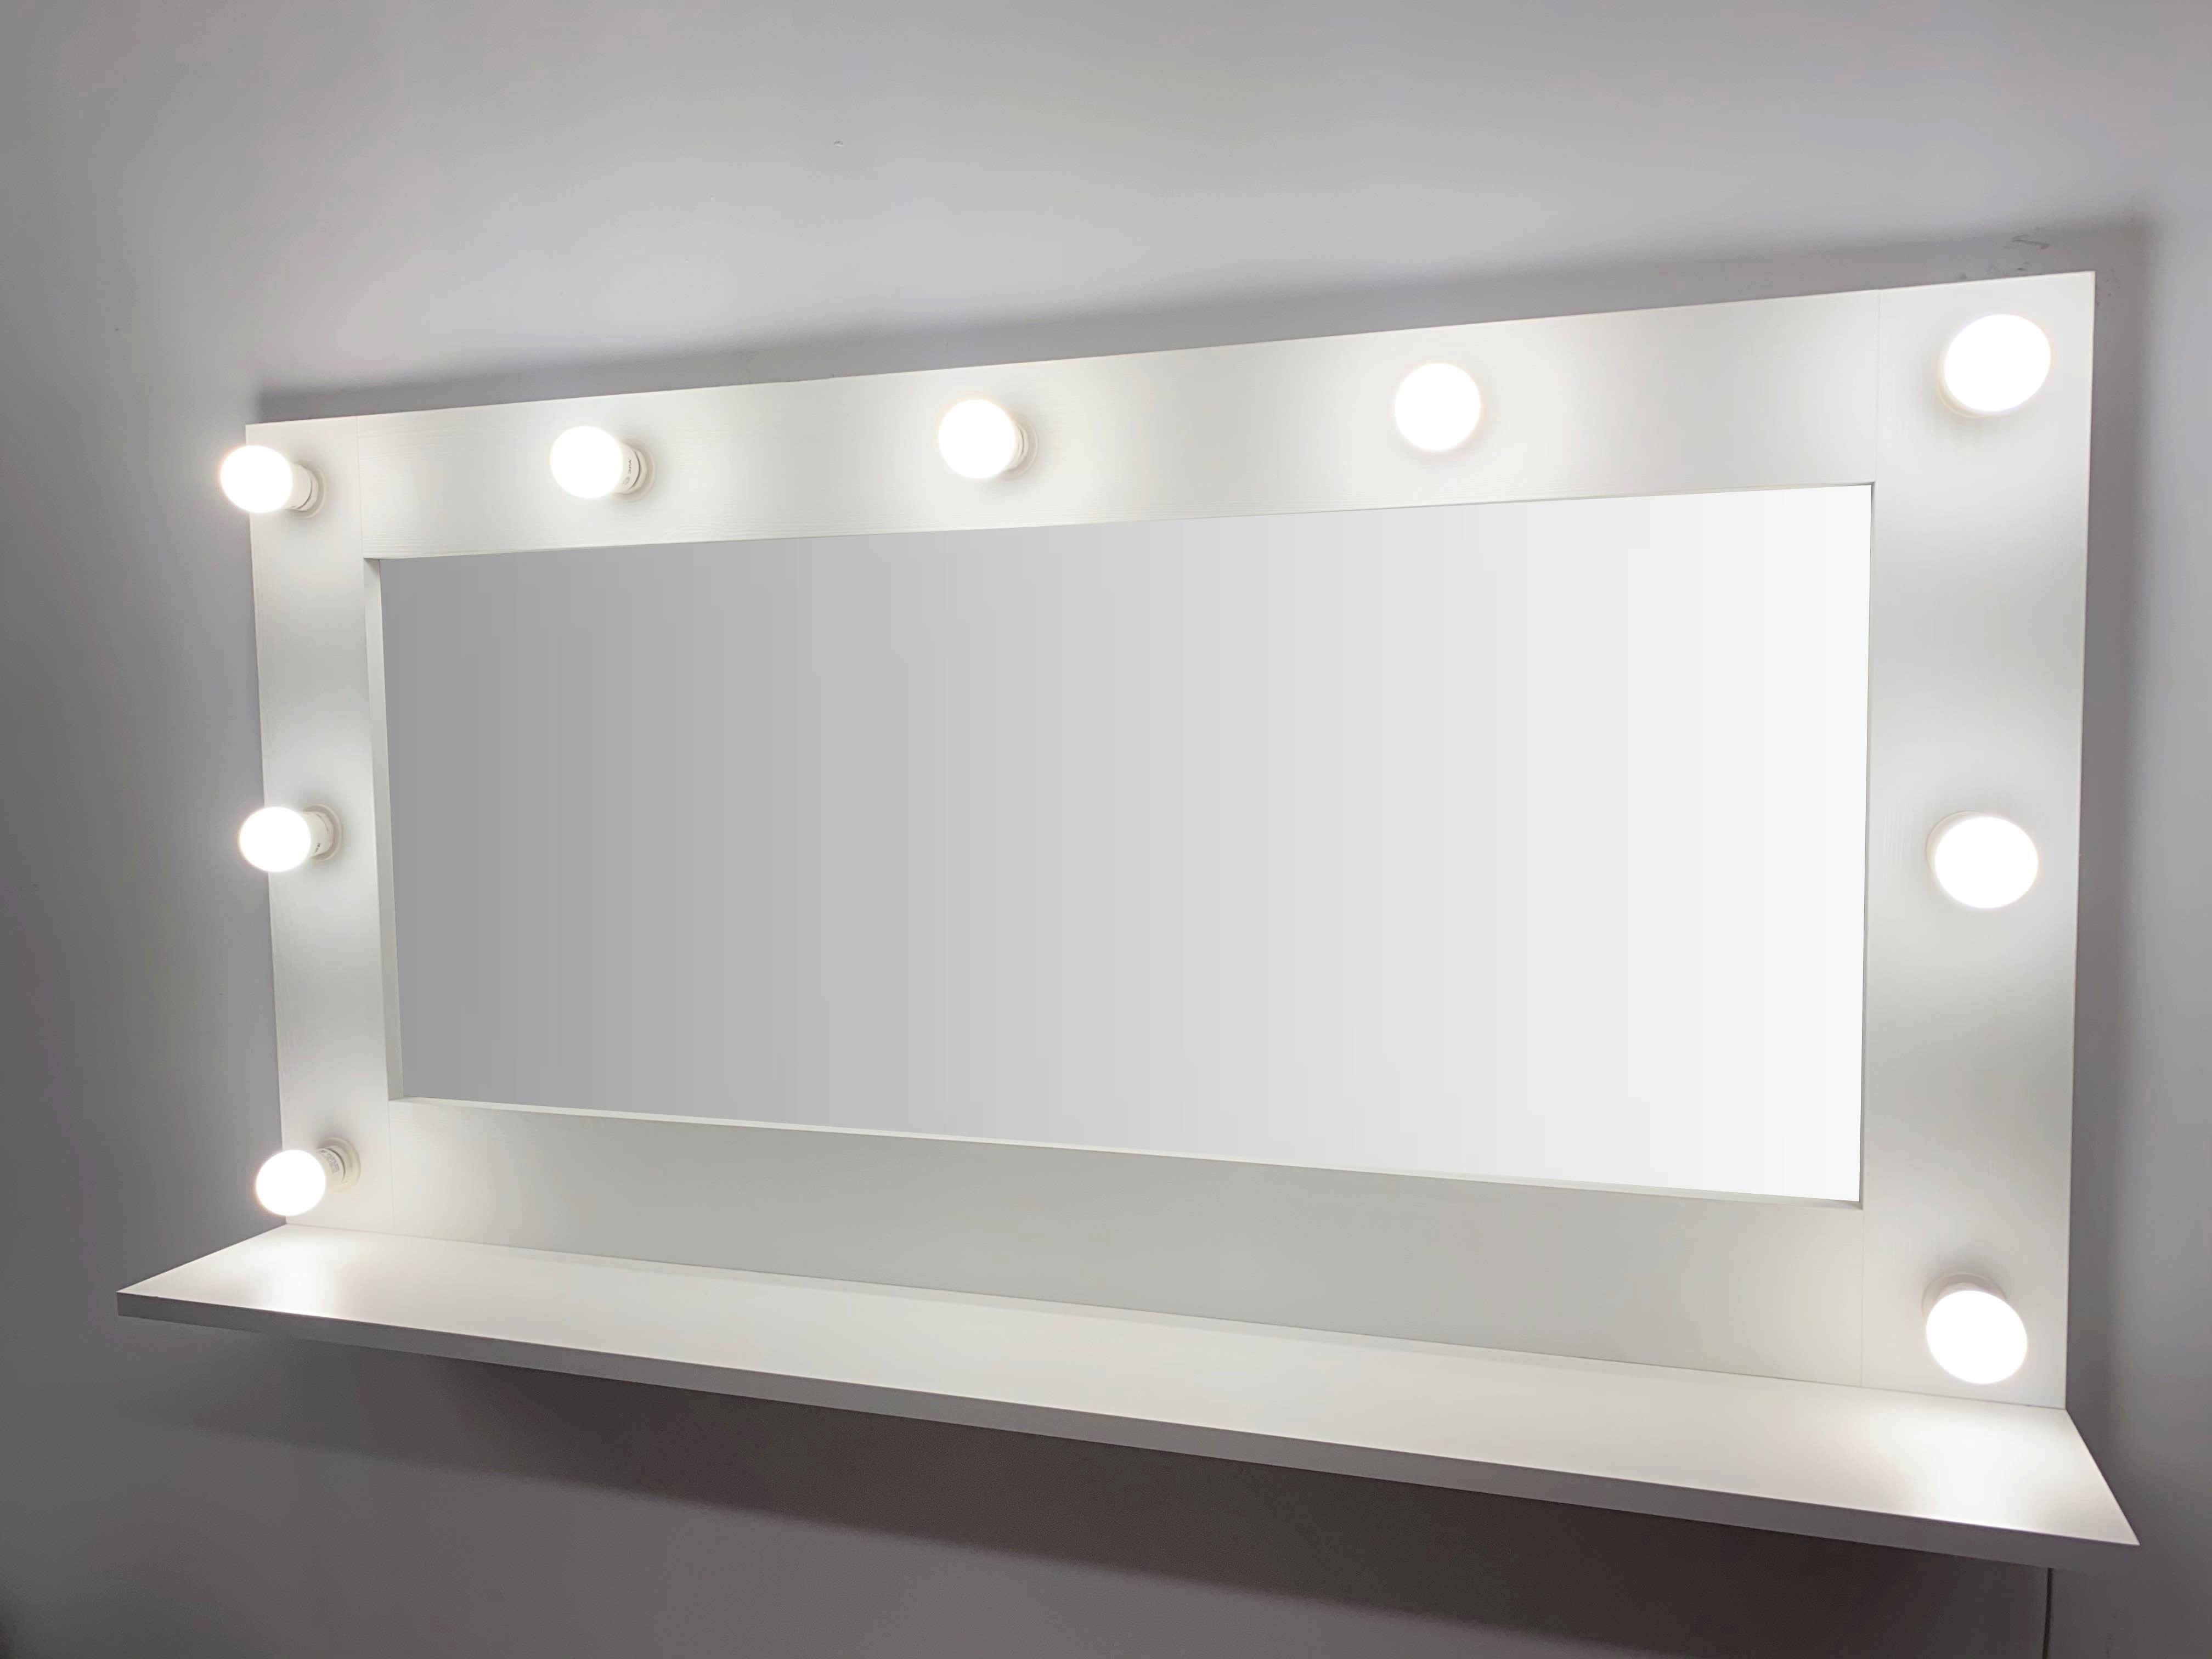 91053085 Гримерное зеркало с лампочками с полочкой 60x120 см цвет белый STLM-0458995 BEAUTYUP